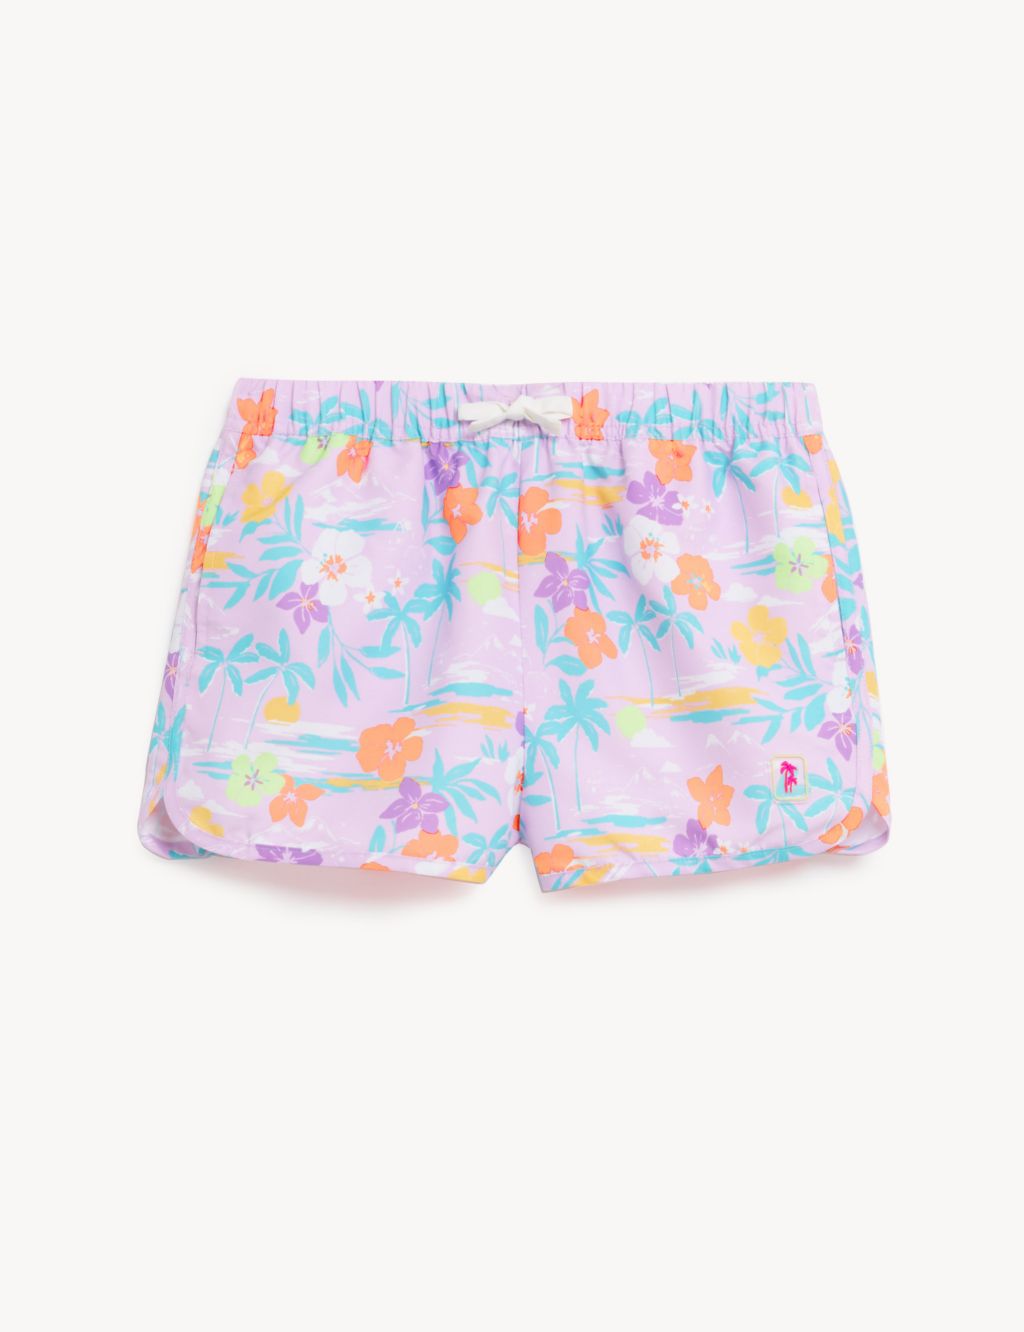 Palm Print Swim Shorts (6-16 Yrs) image 2